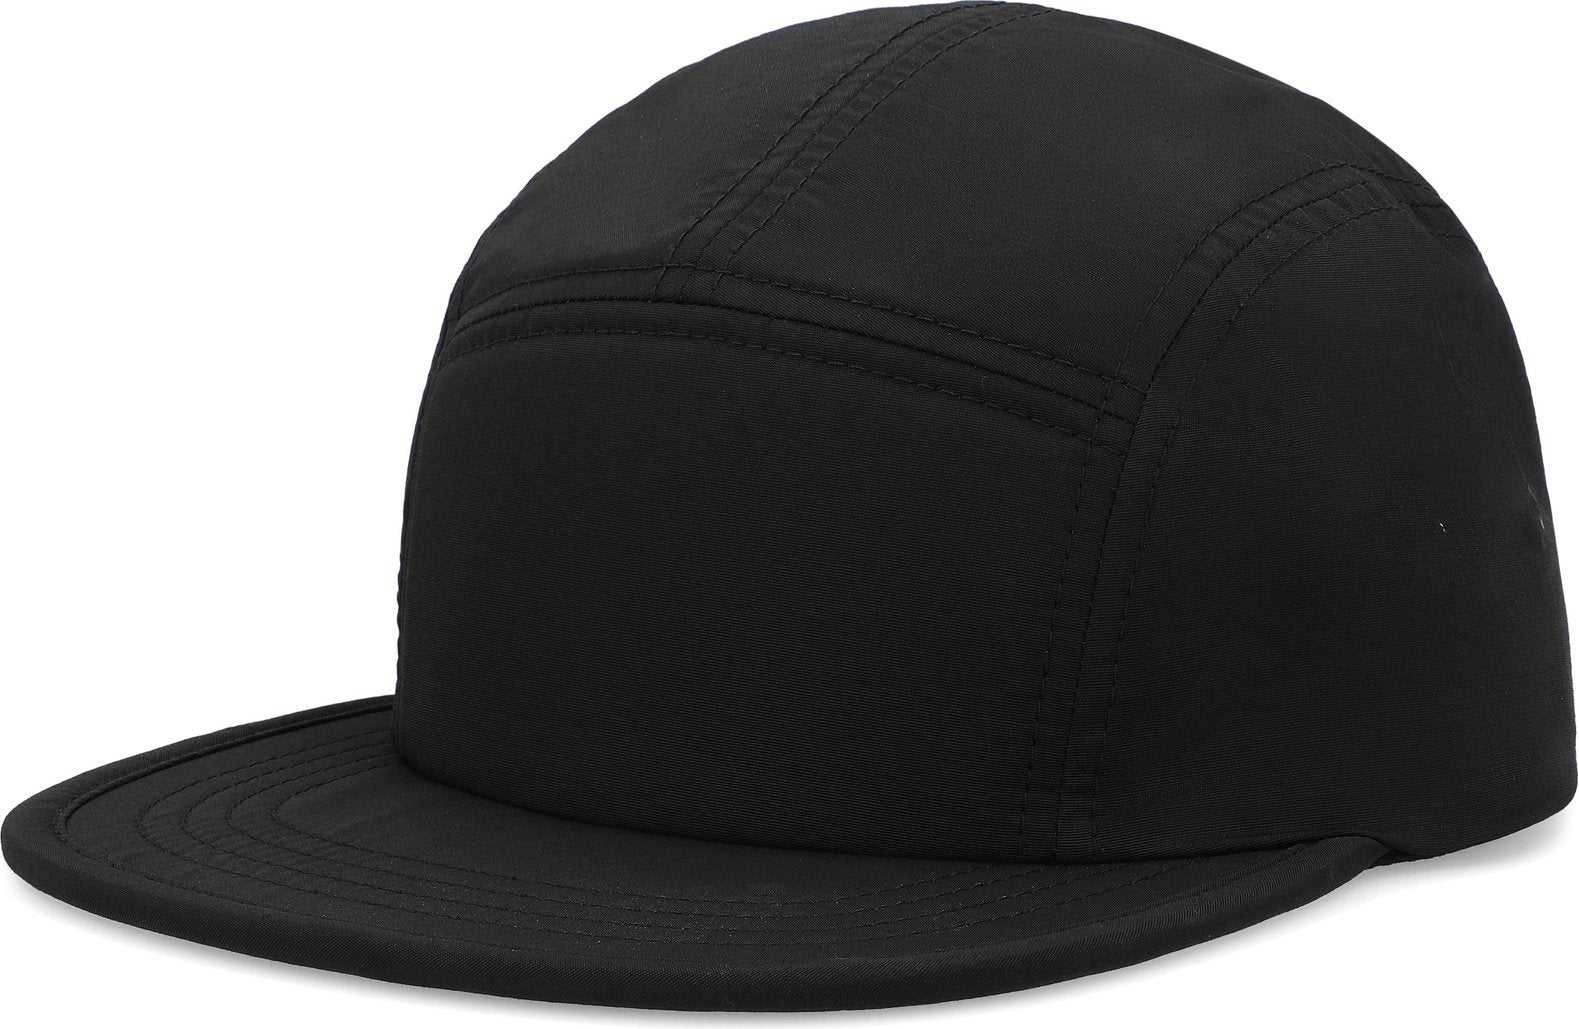 Pacific Headwear P781 Packable Camper Cap - Black - HIT a Double